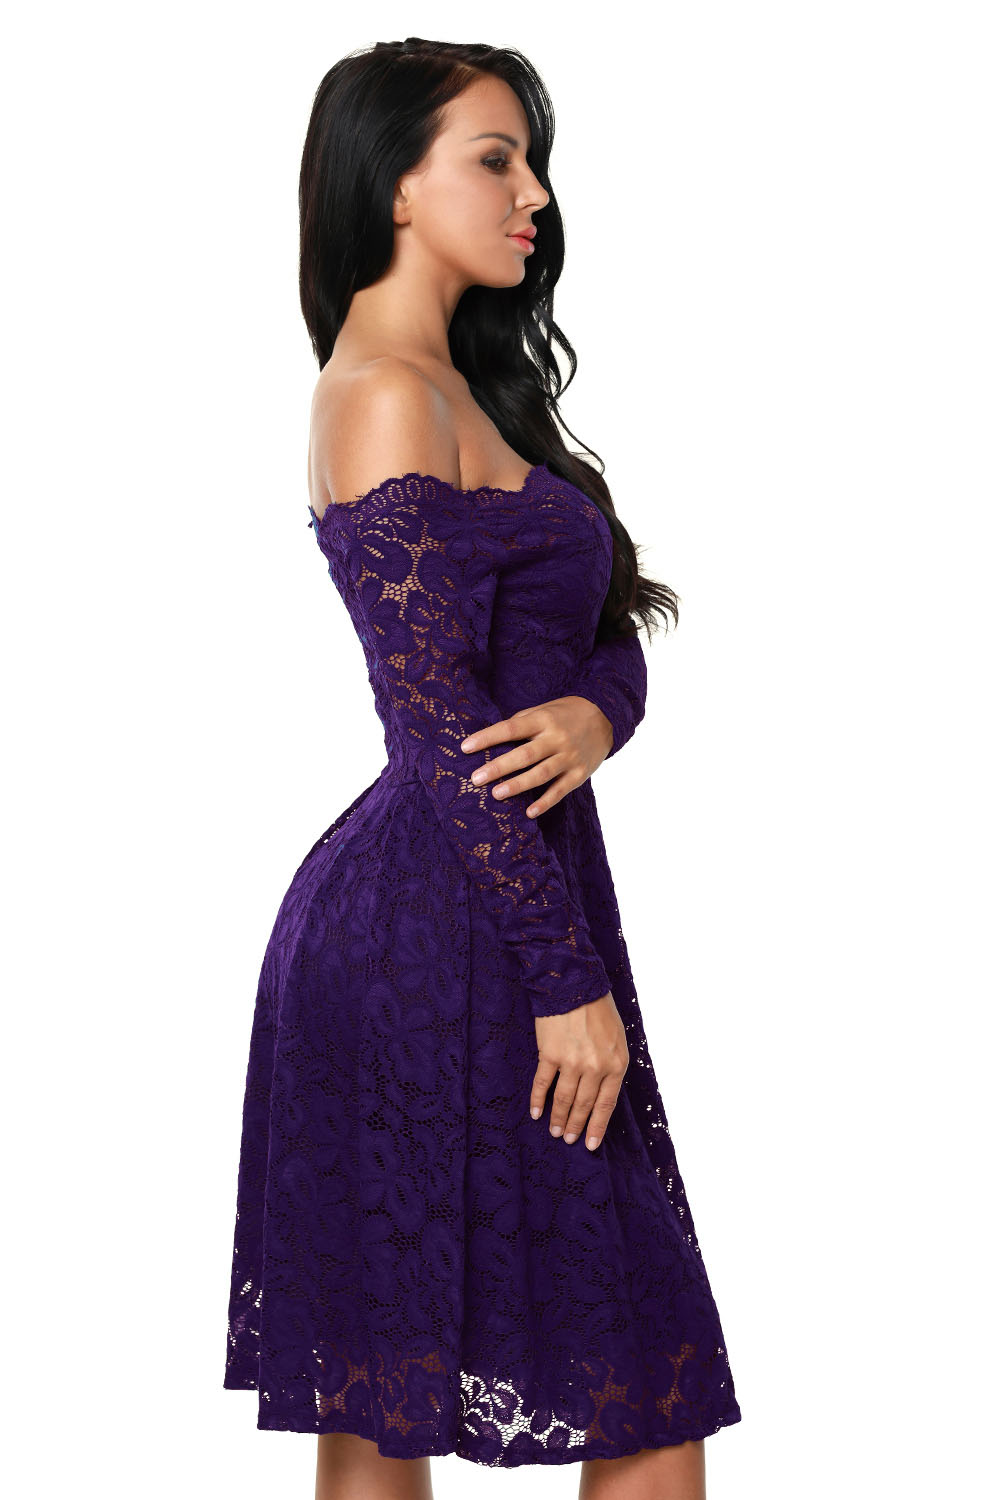 Вечернее платье Модель № 1183 до середины колена фиолетового цвета